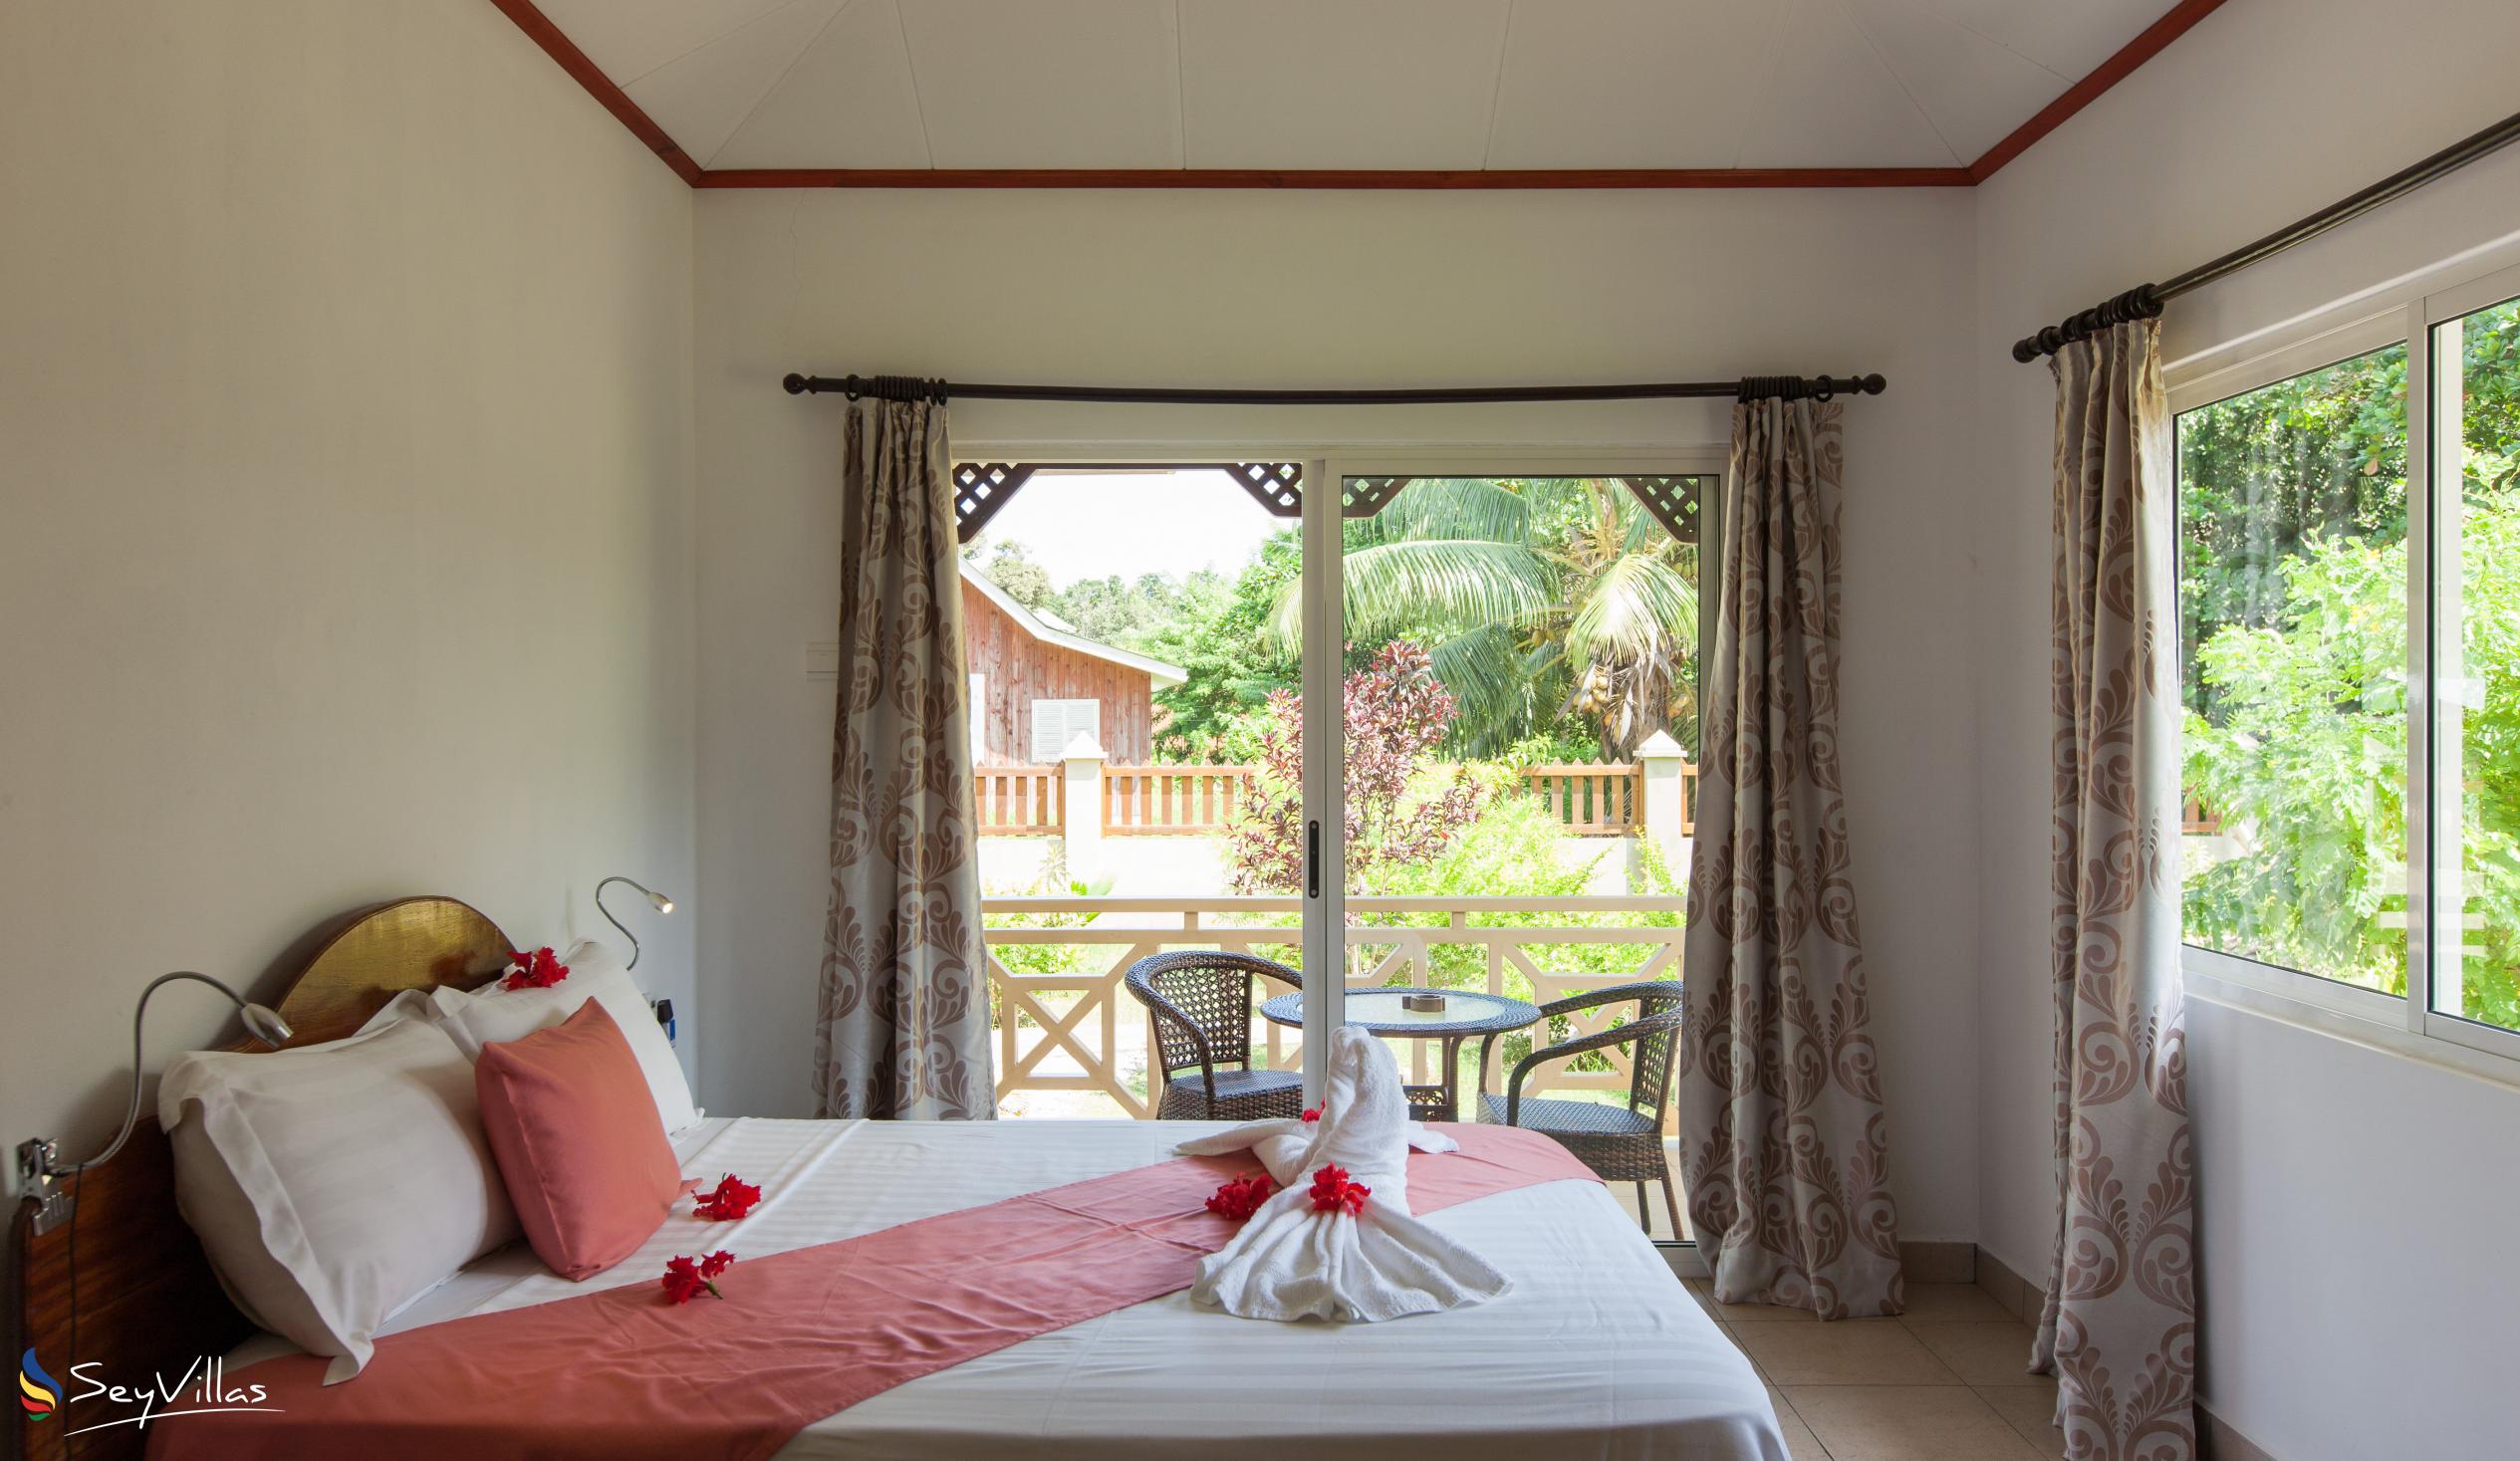 Foto 48: Hostellerie La Digue - Chalet 2 chambres - La Digue (Seychelles)